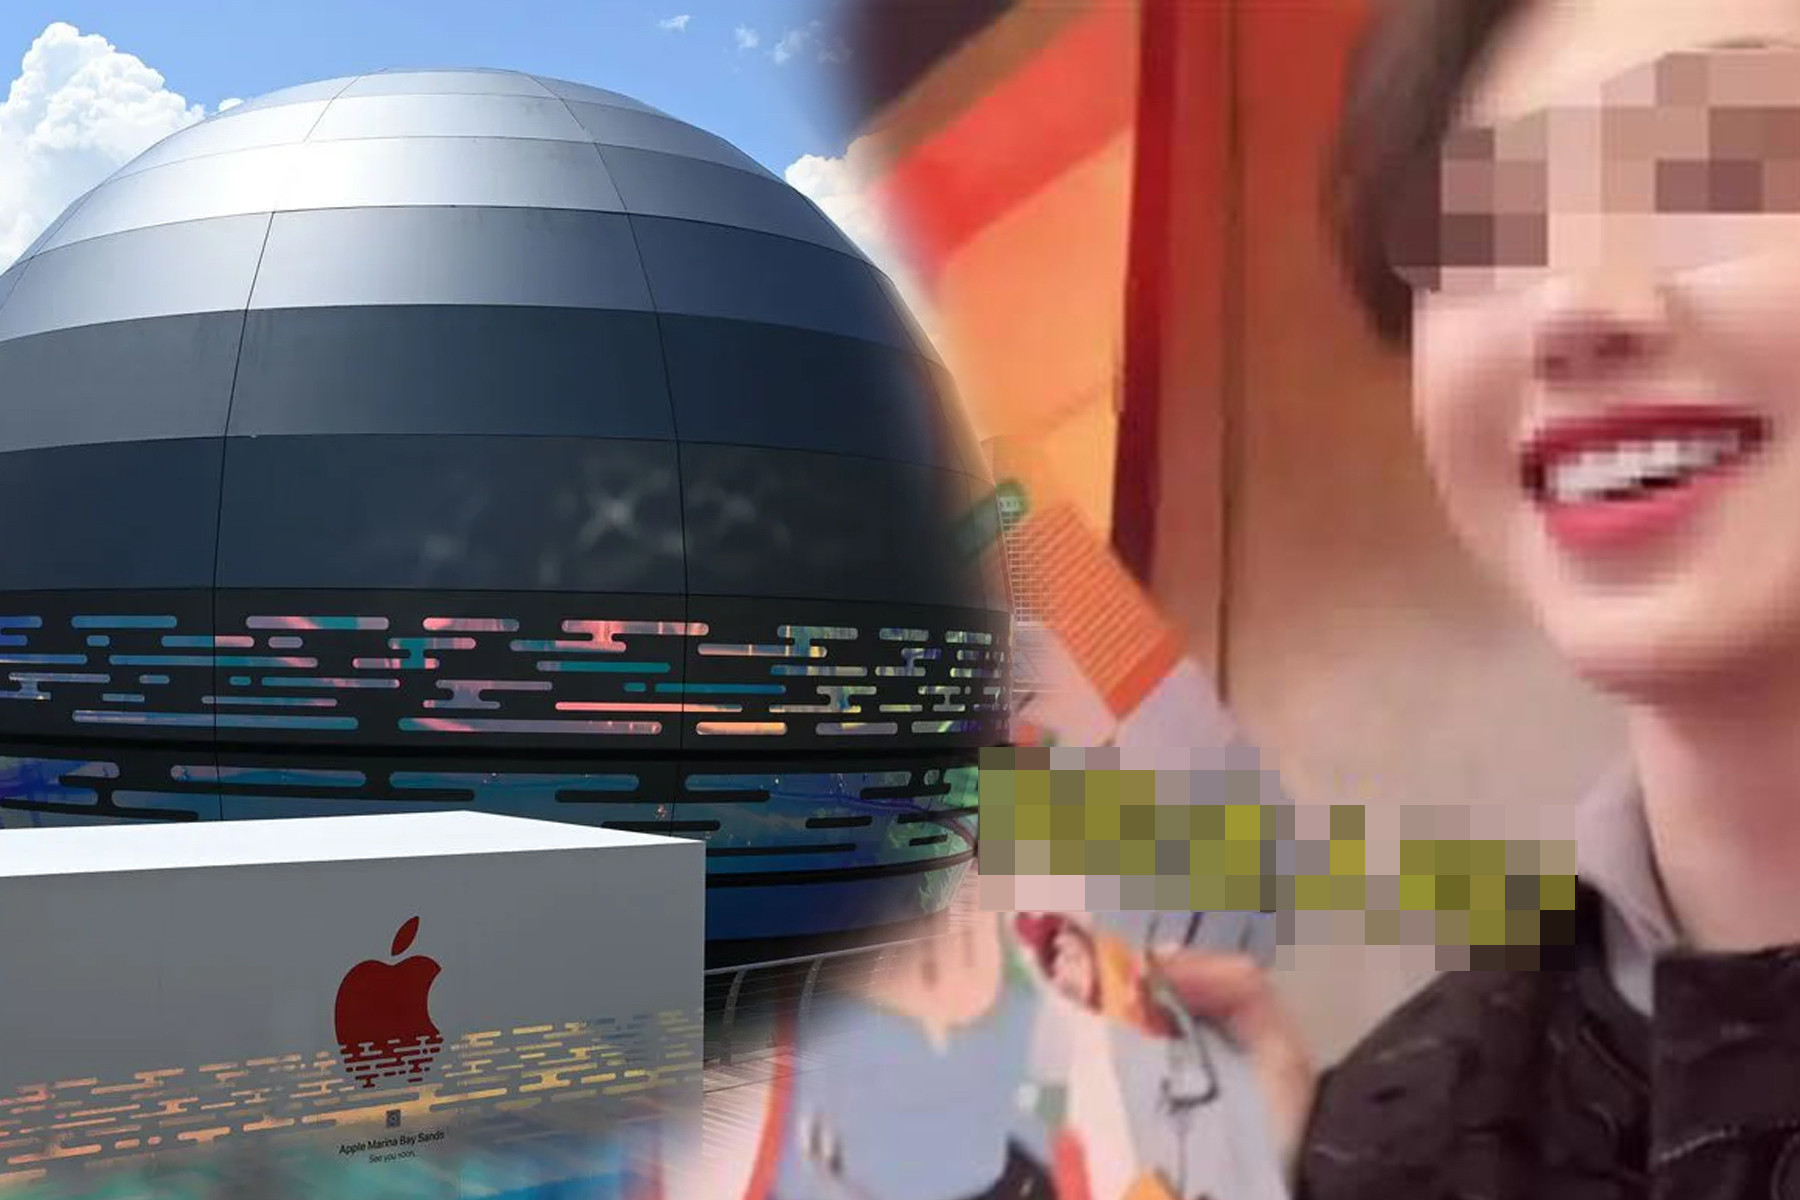  Cú lừa chấn động mạng xã hội Trung Quốc, Apple đầu tư kỷ lục vào Singapore 